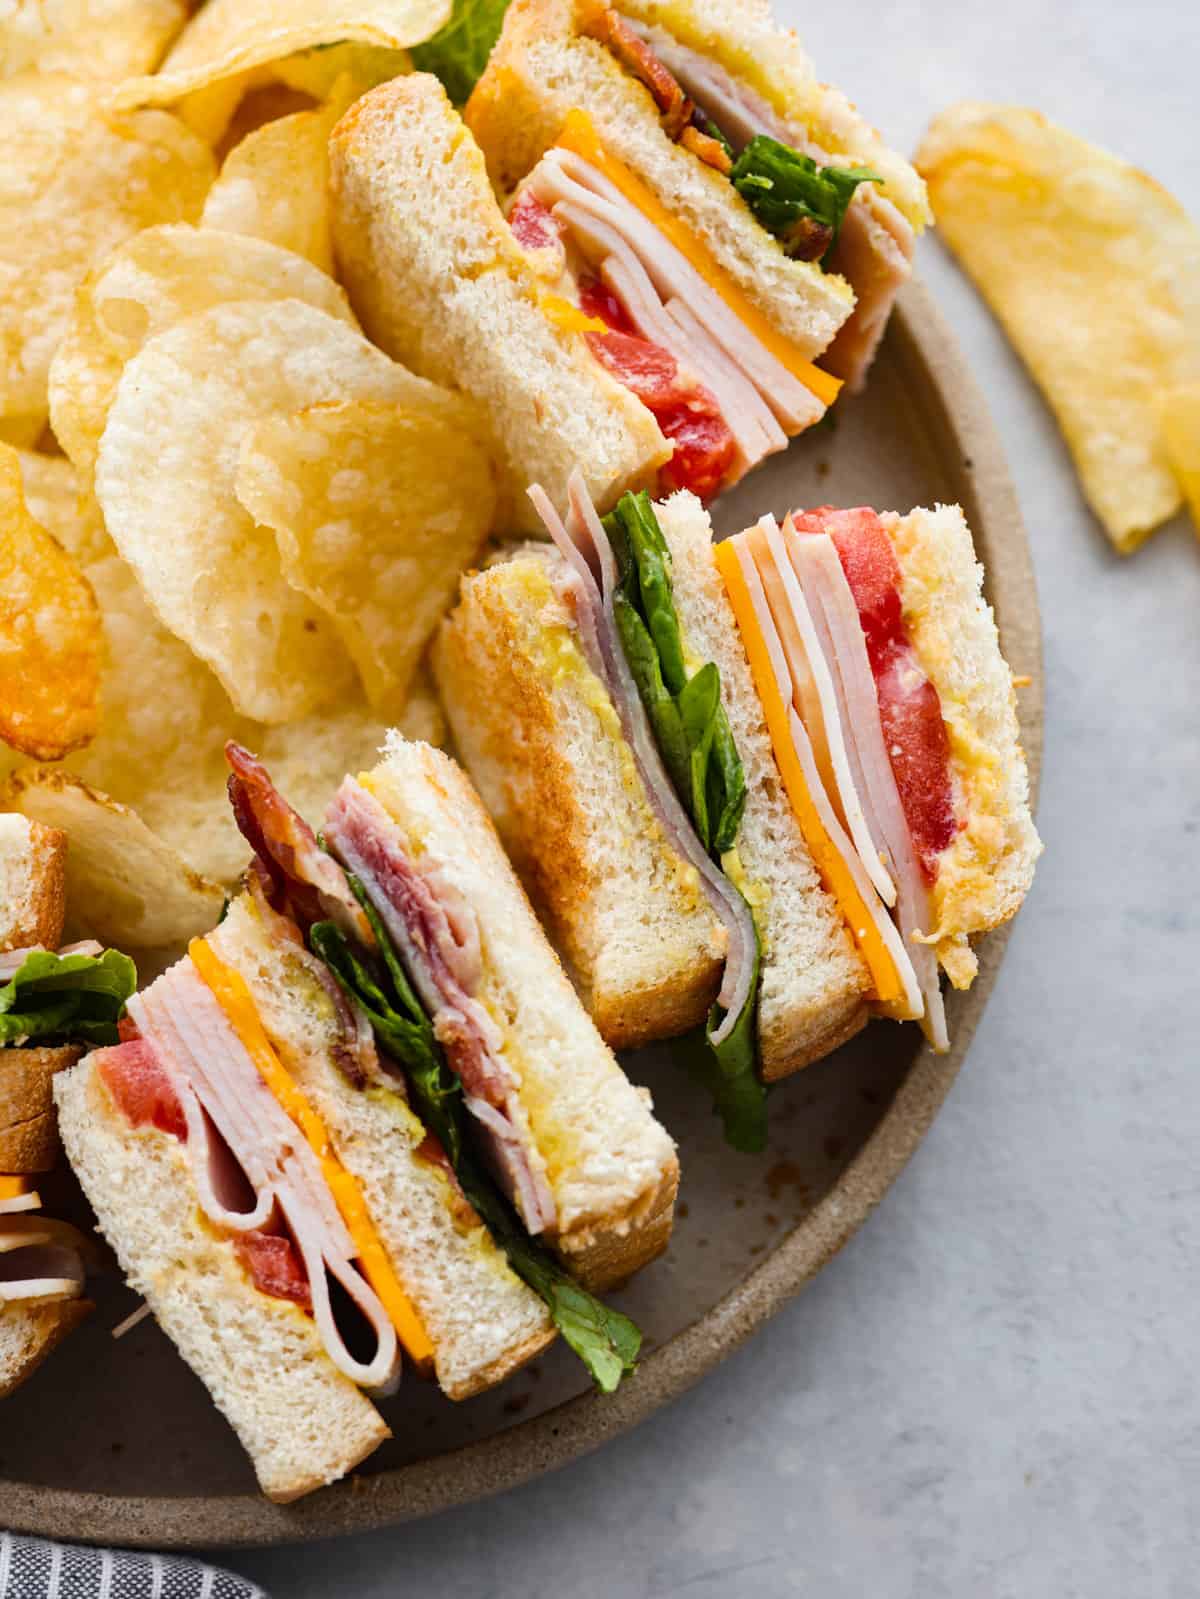 Club Sandwich image